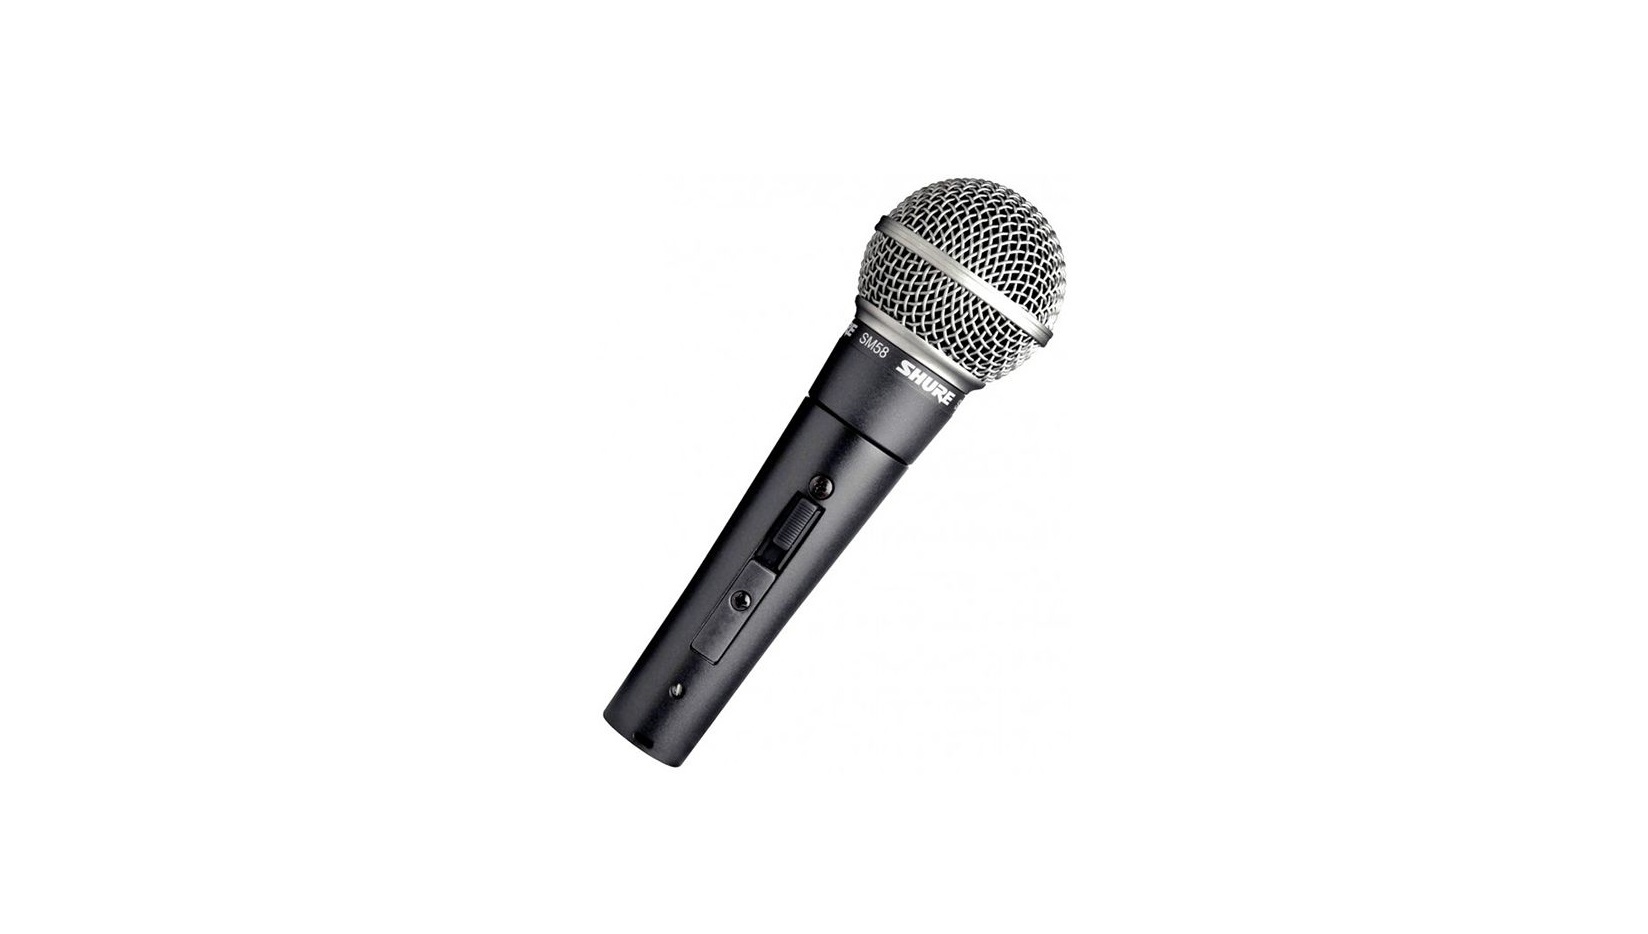 Откройте для себя профессиональный вокальный динамический микрофон Shure SM58 - незаменимый инструмент для любого вокалиста и музыканта